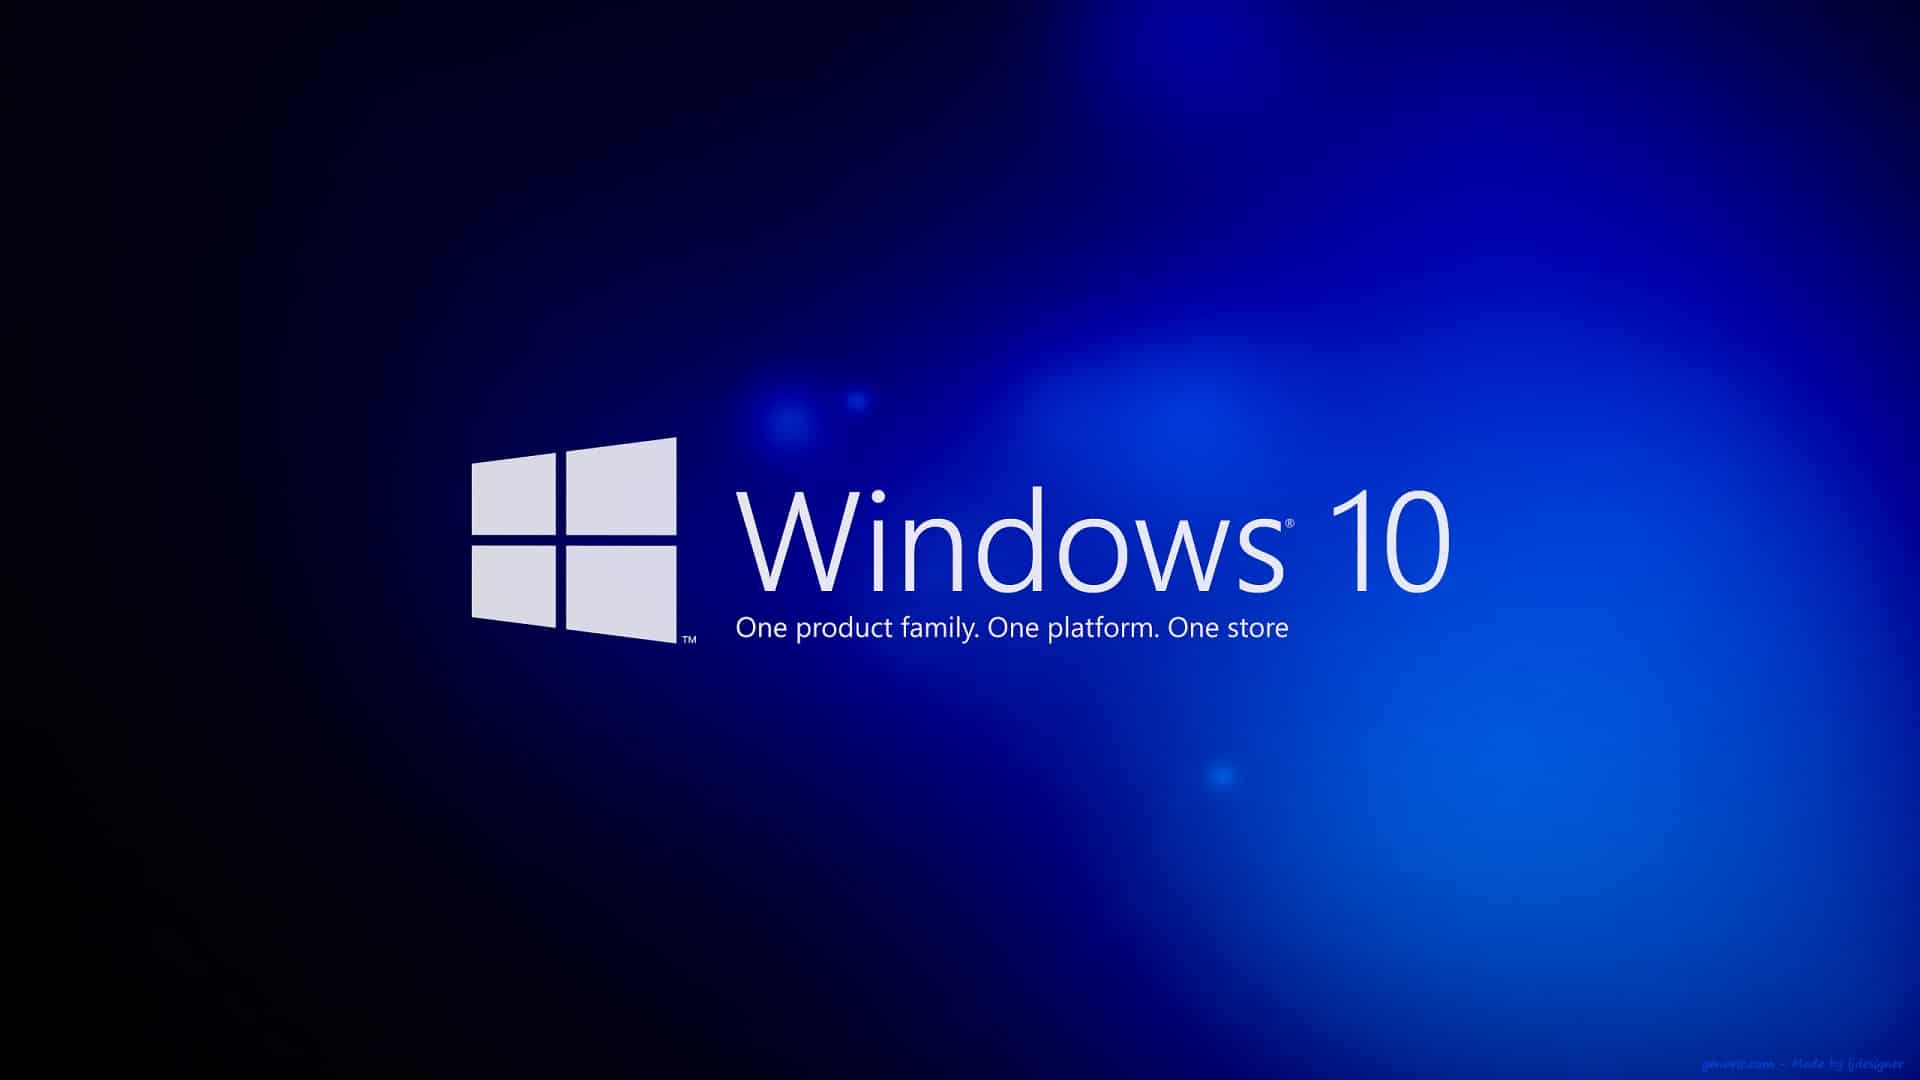 Windows 10 gratuit fortunate son mp3 download